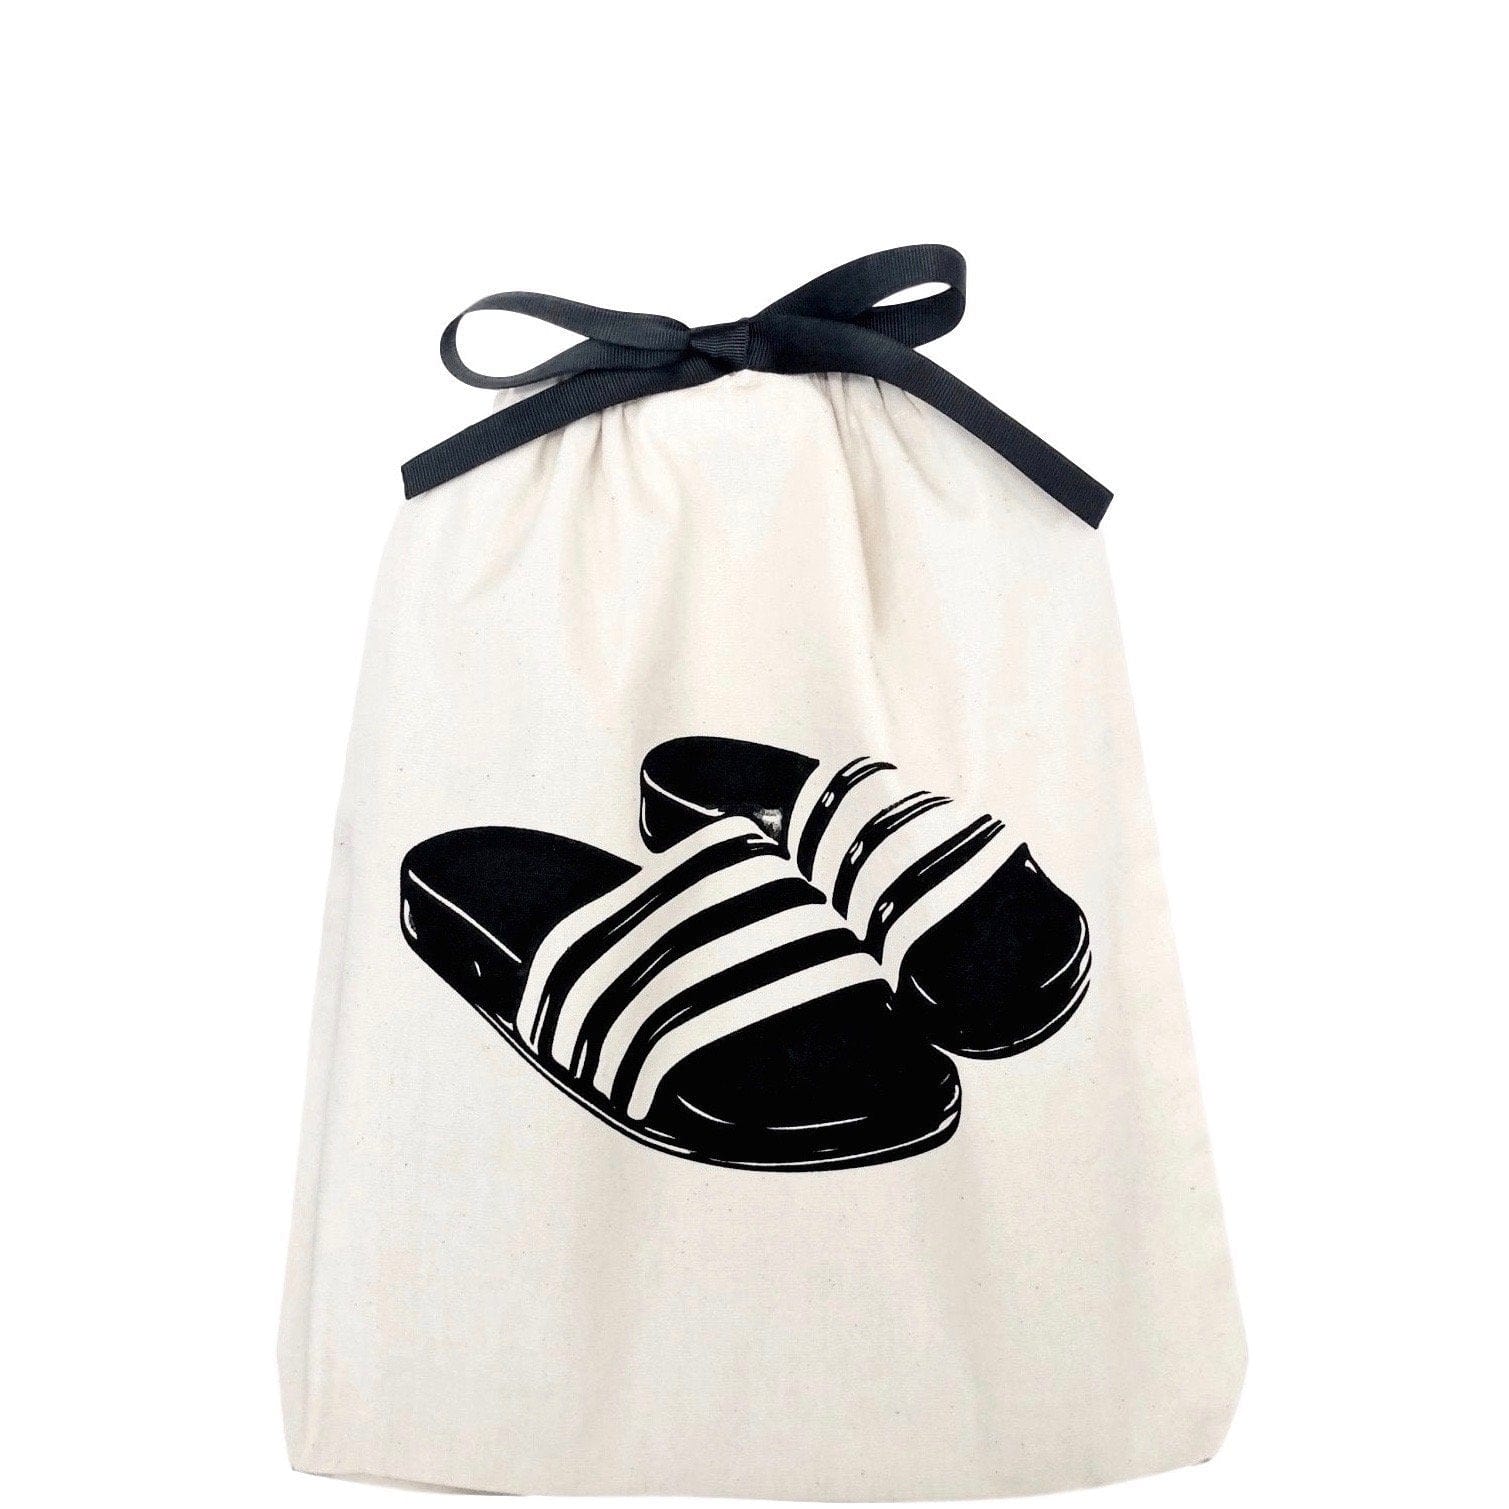 Slides Sandal Shoe Bag , slides printed on front, black ribbon